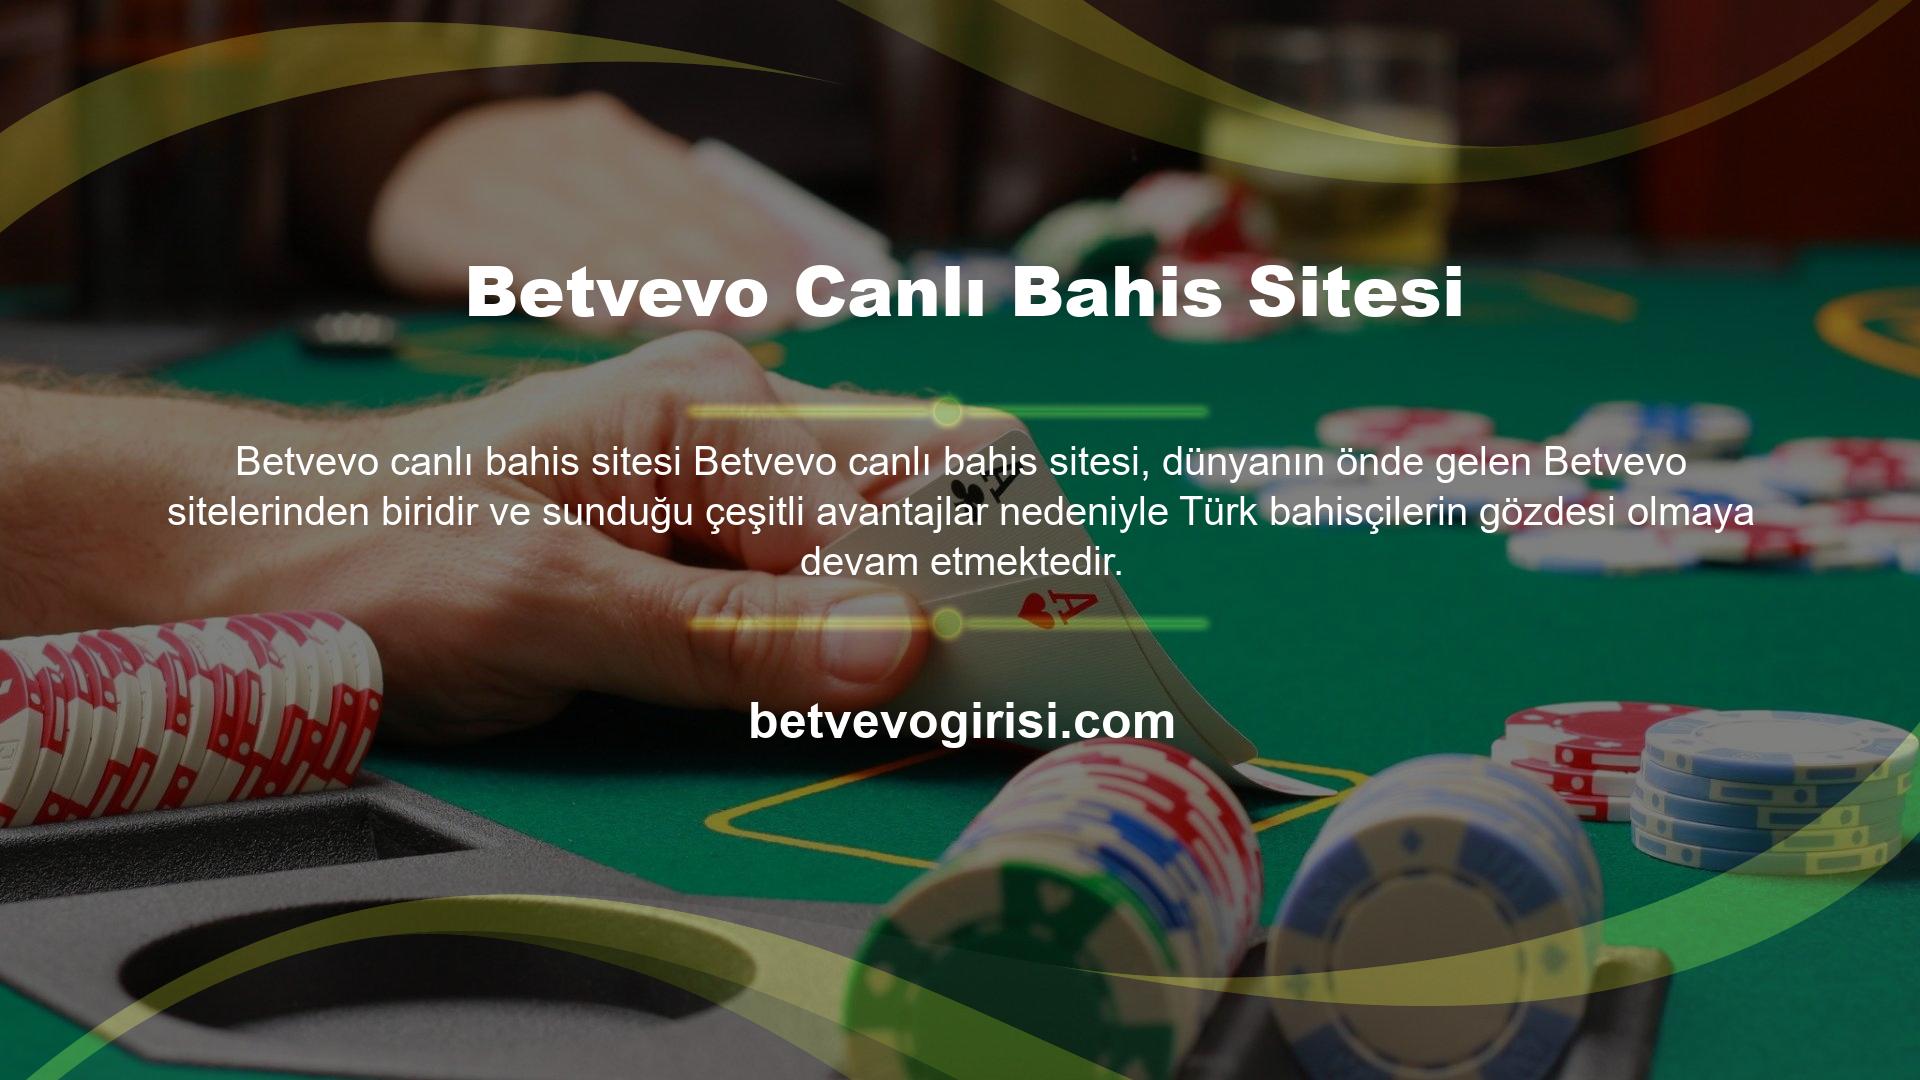 Basit katılım ve dönüşüm, Betvevo şu anda Türkiye'de neler yaşıyor? Betvevo güvenilir mi? kumar siteleri hakkındaki sorularınızın yanıtları bulunmaktadır